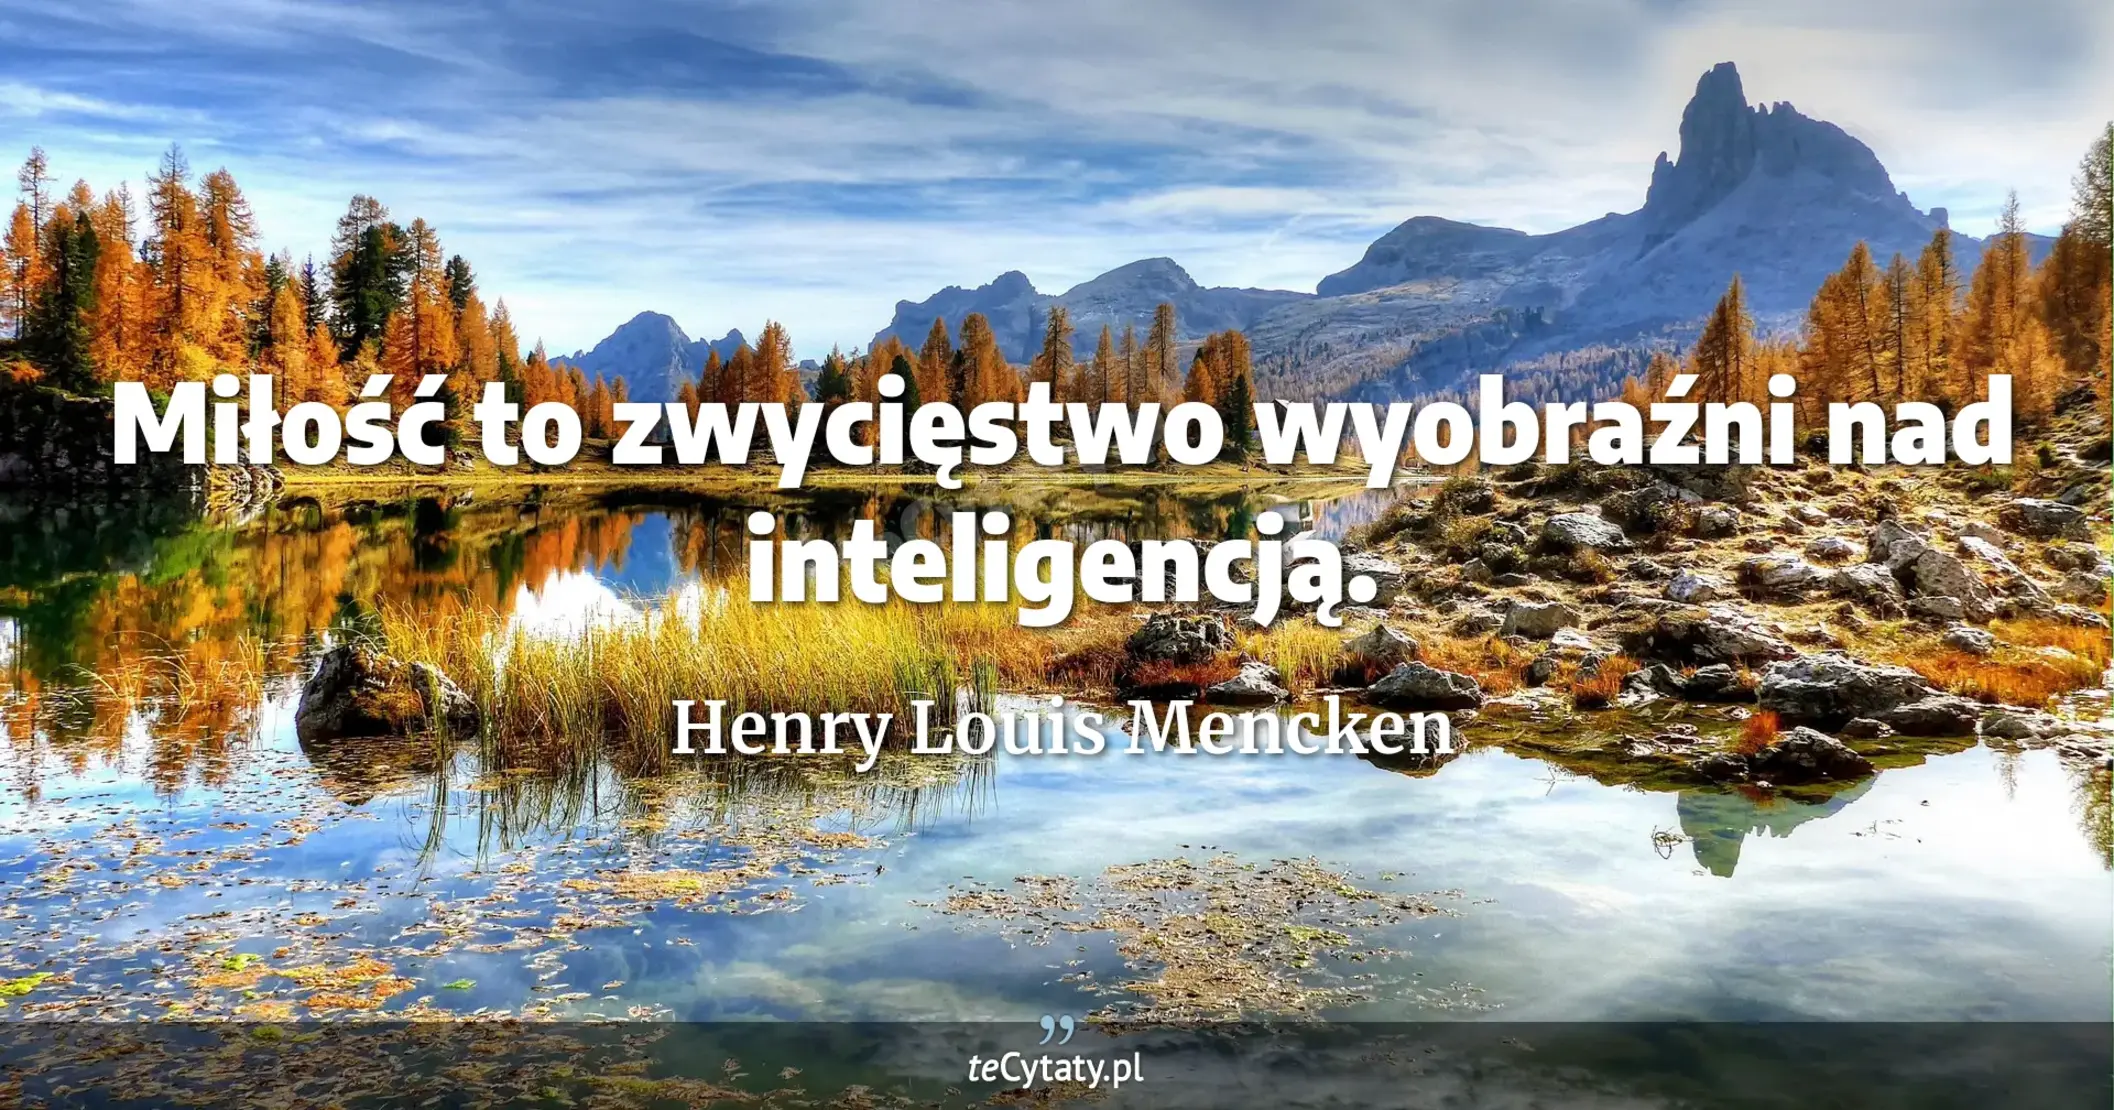 Miłość to zwycięstwo wyobraźni nad inteligencją. - Henry Louis Mencken